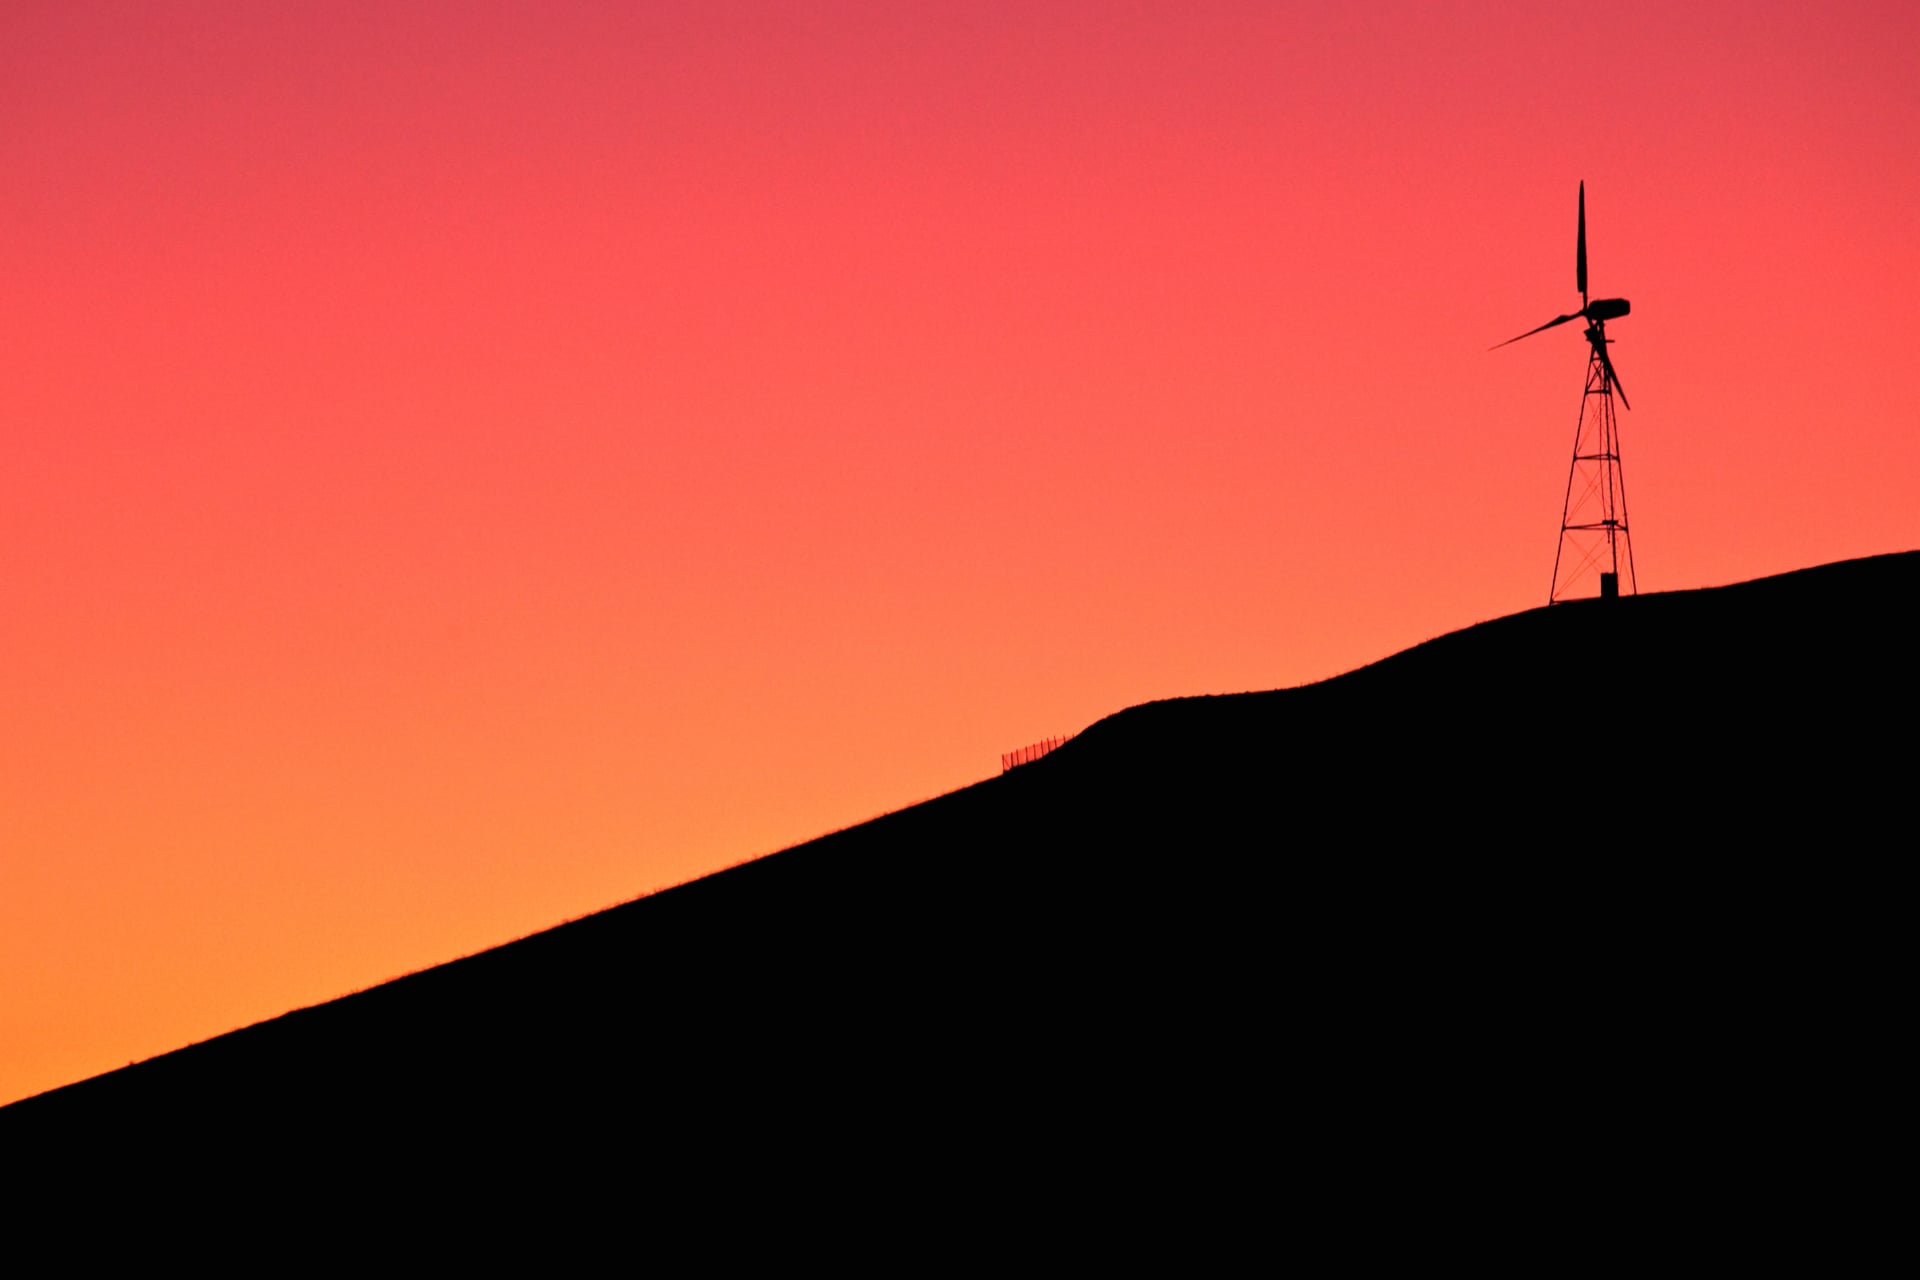 Digital Art Windmill at 1280 x 960 size wallpapers HD quality